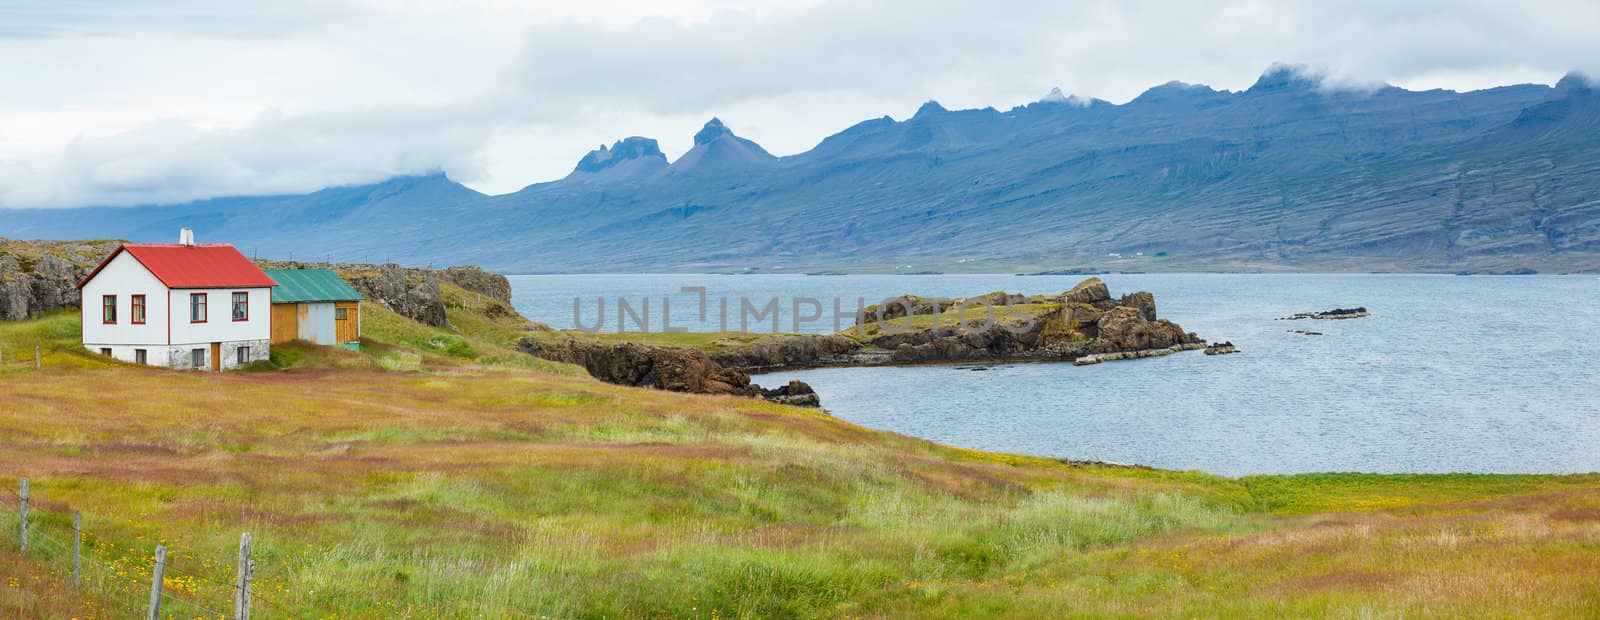 Beautiful landscape, Iceland. by maxoliki